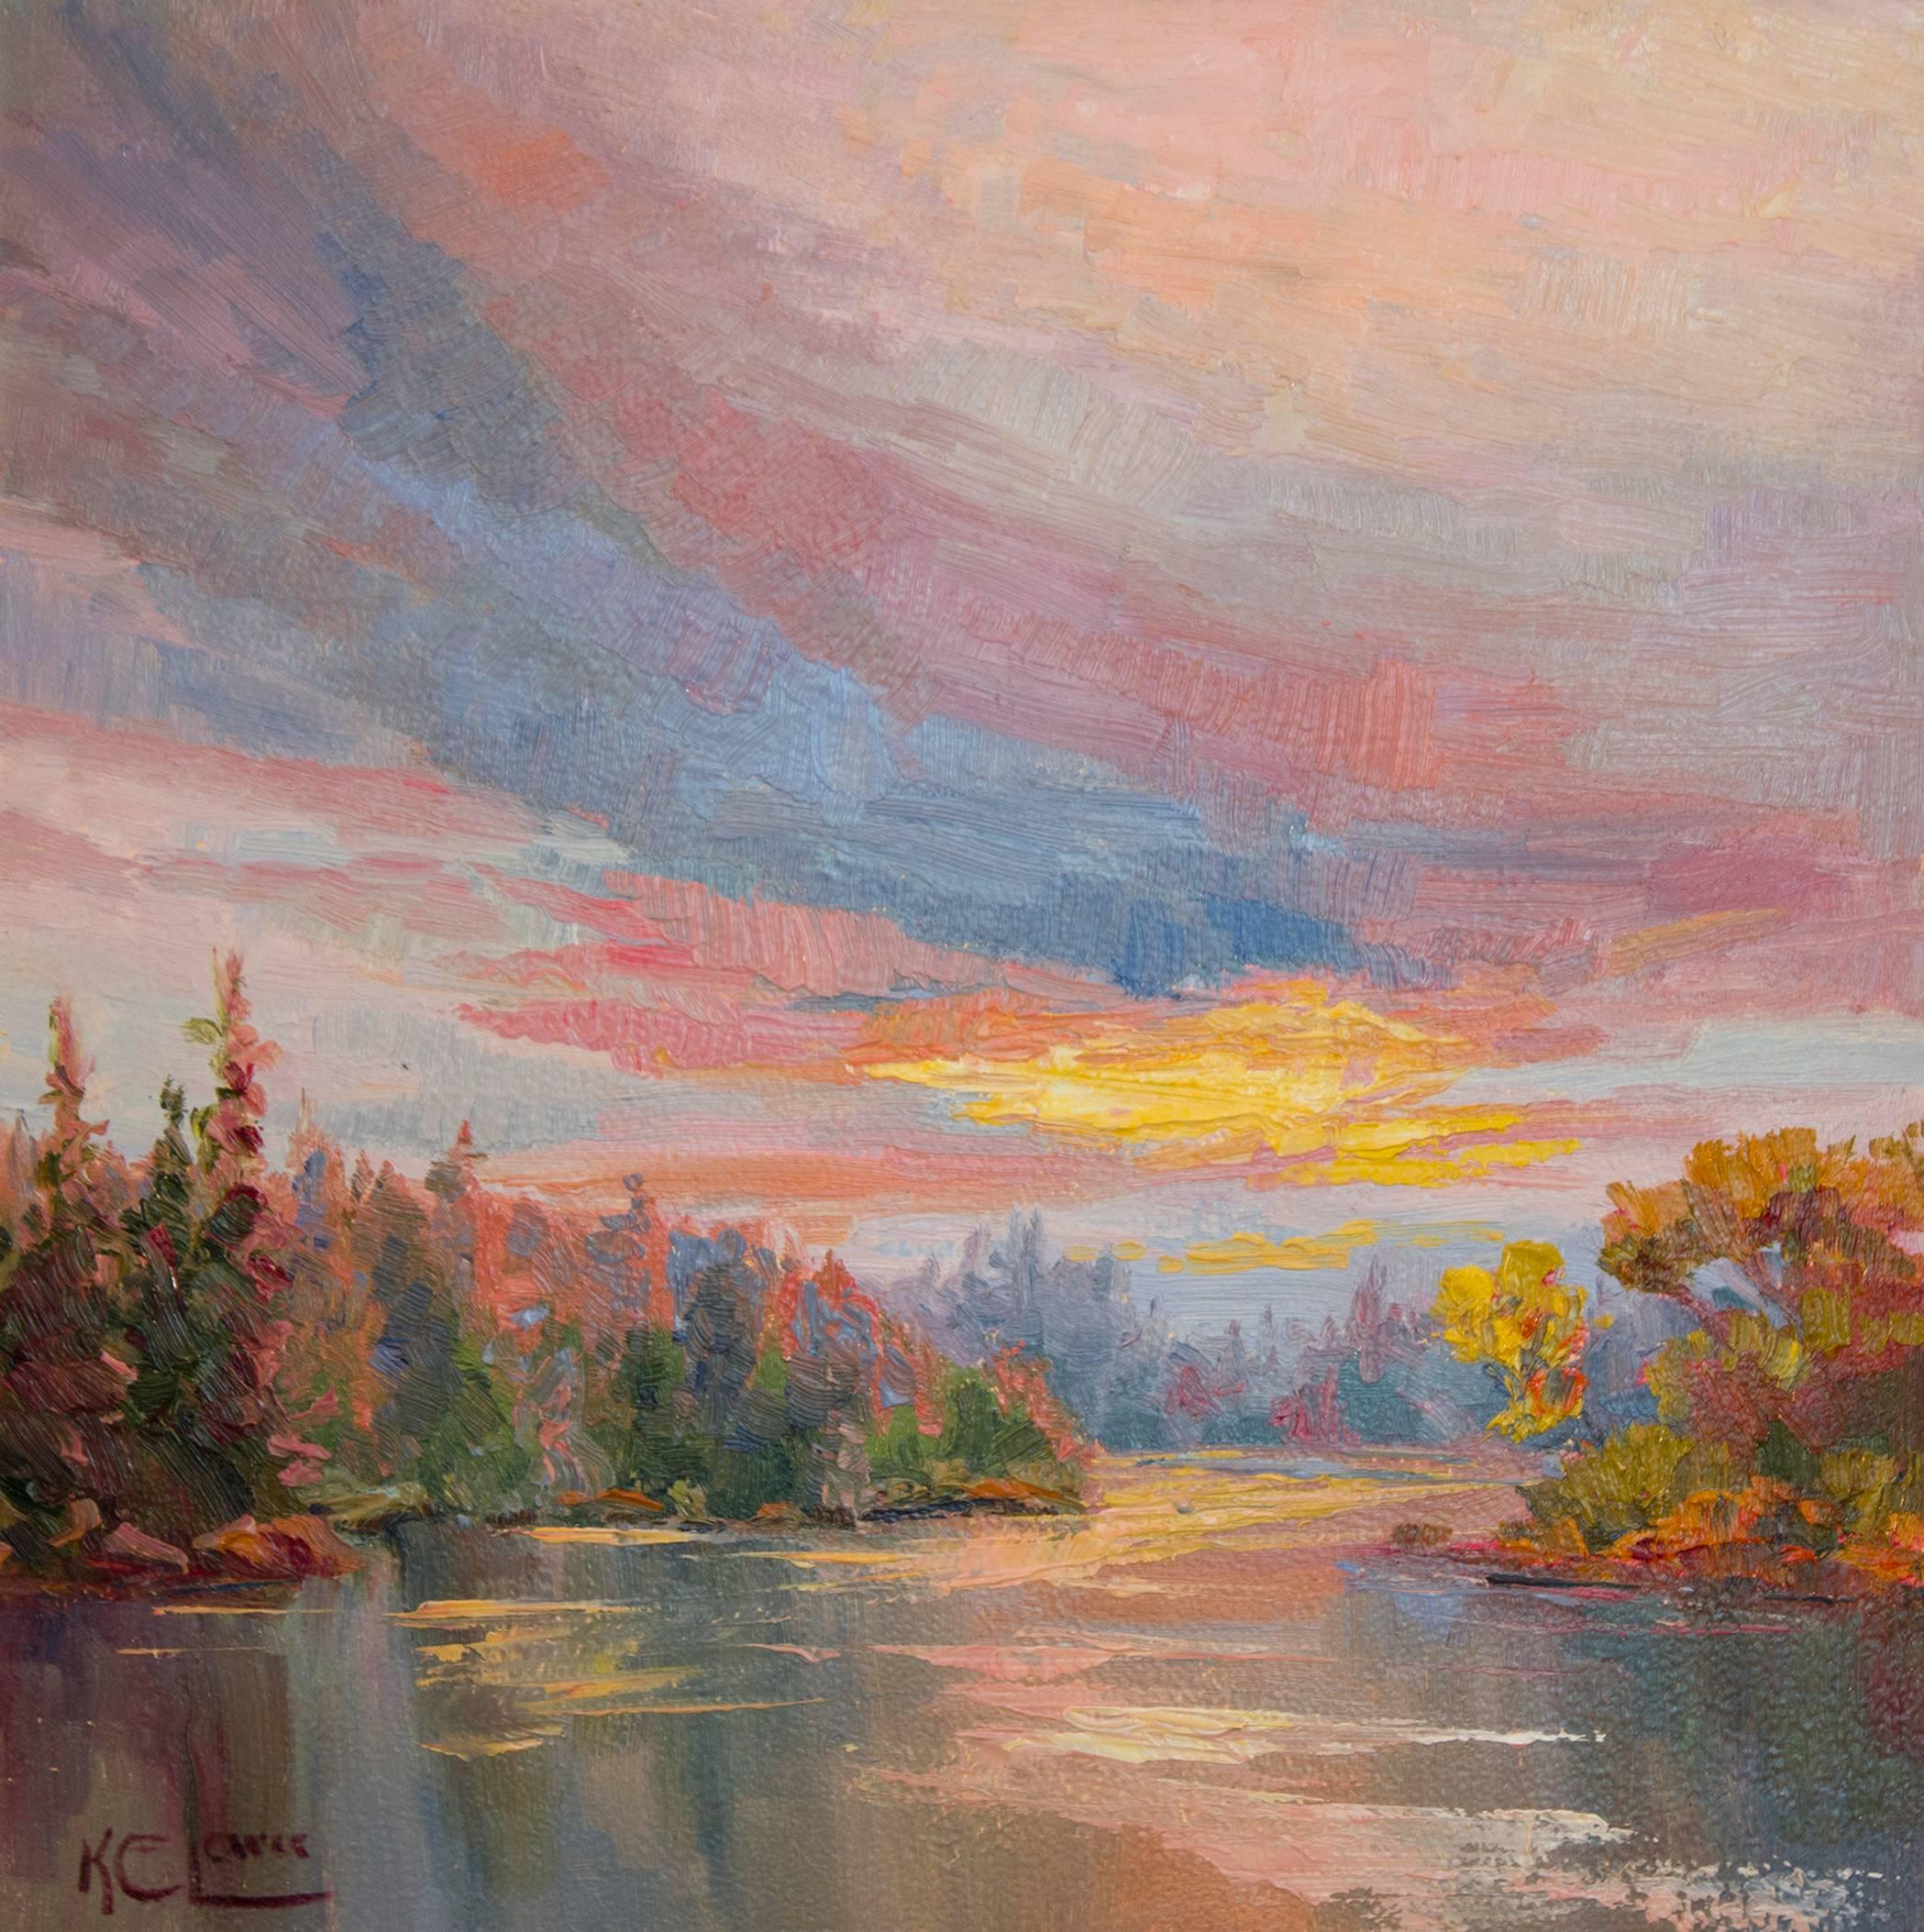 Karen E. Lewis Landscape Painting - Glimpse of Light